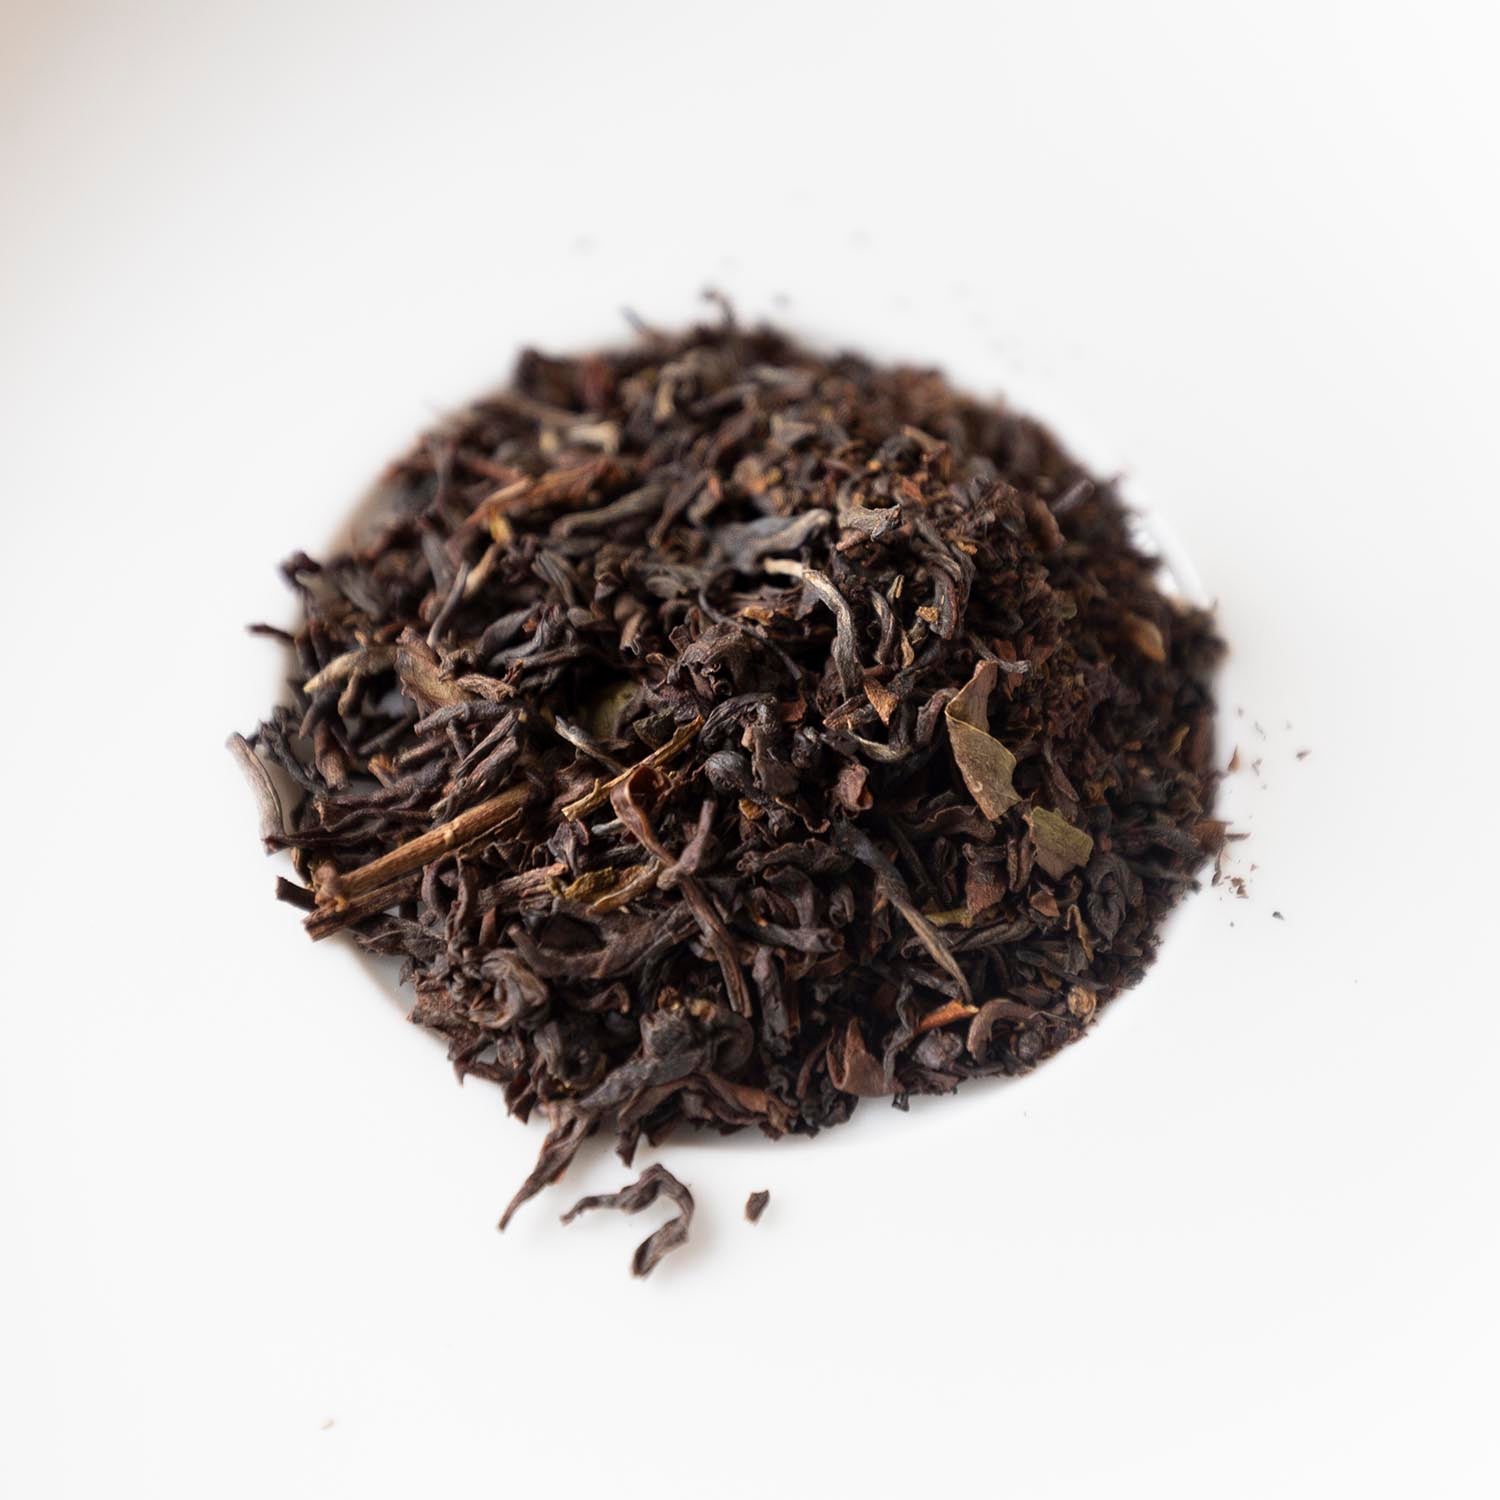 セカンドフラッシュの中で最も上質と言われるマーガレッツホープの茶葉。